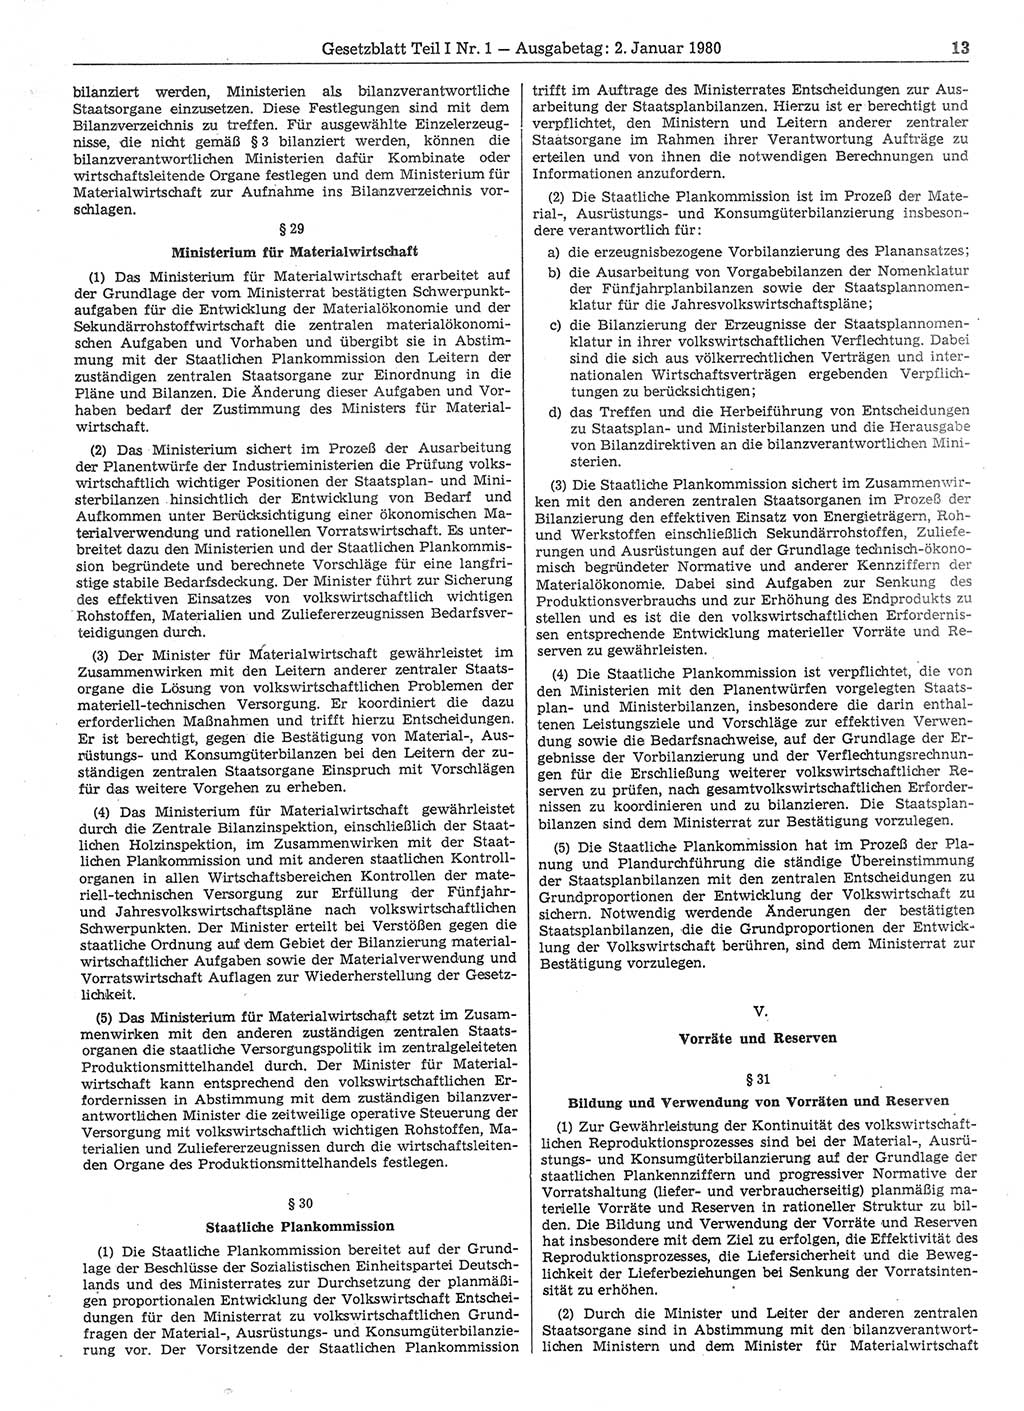 Gesetzblatt (GBl.) der Deutschen Demokratischen Republik (DDR) Teil Ⅰ 1980, Seite 13 (GBl. DDR Ⅰ 1980, S. 13)